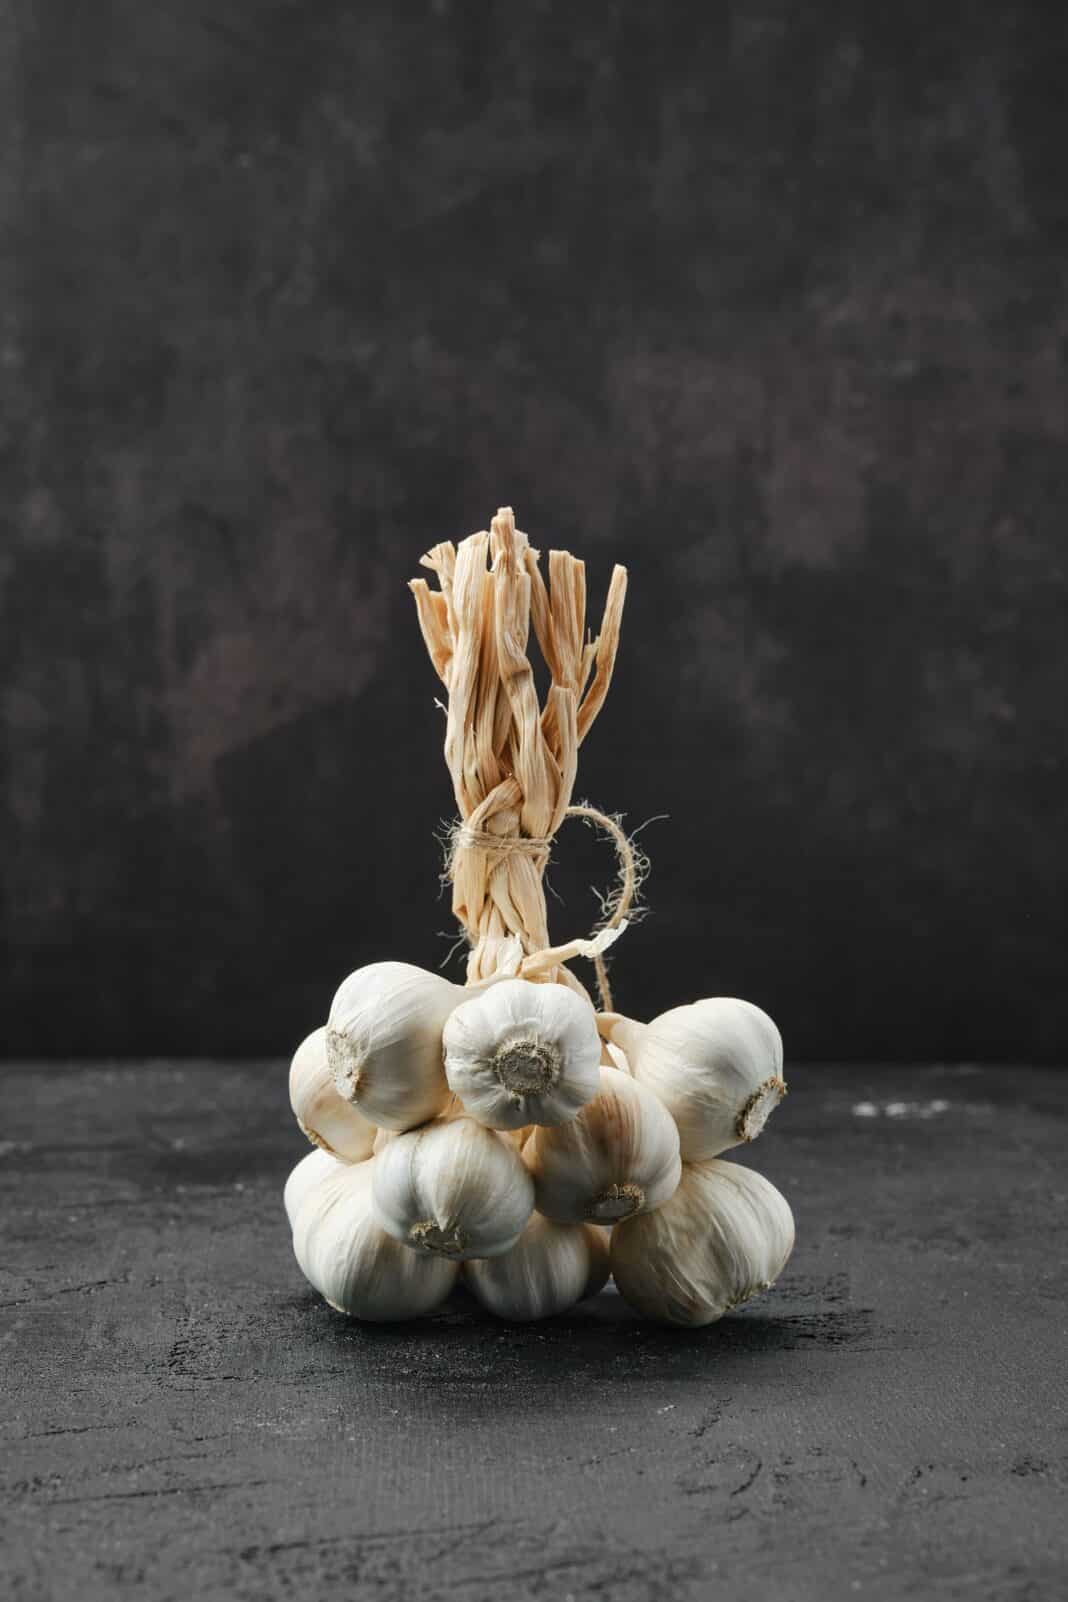 Bunch of garlic on dark background